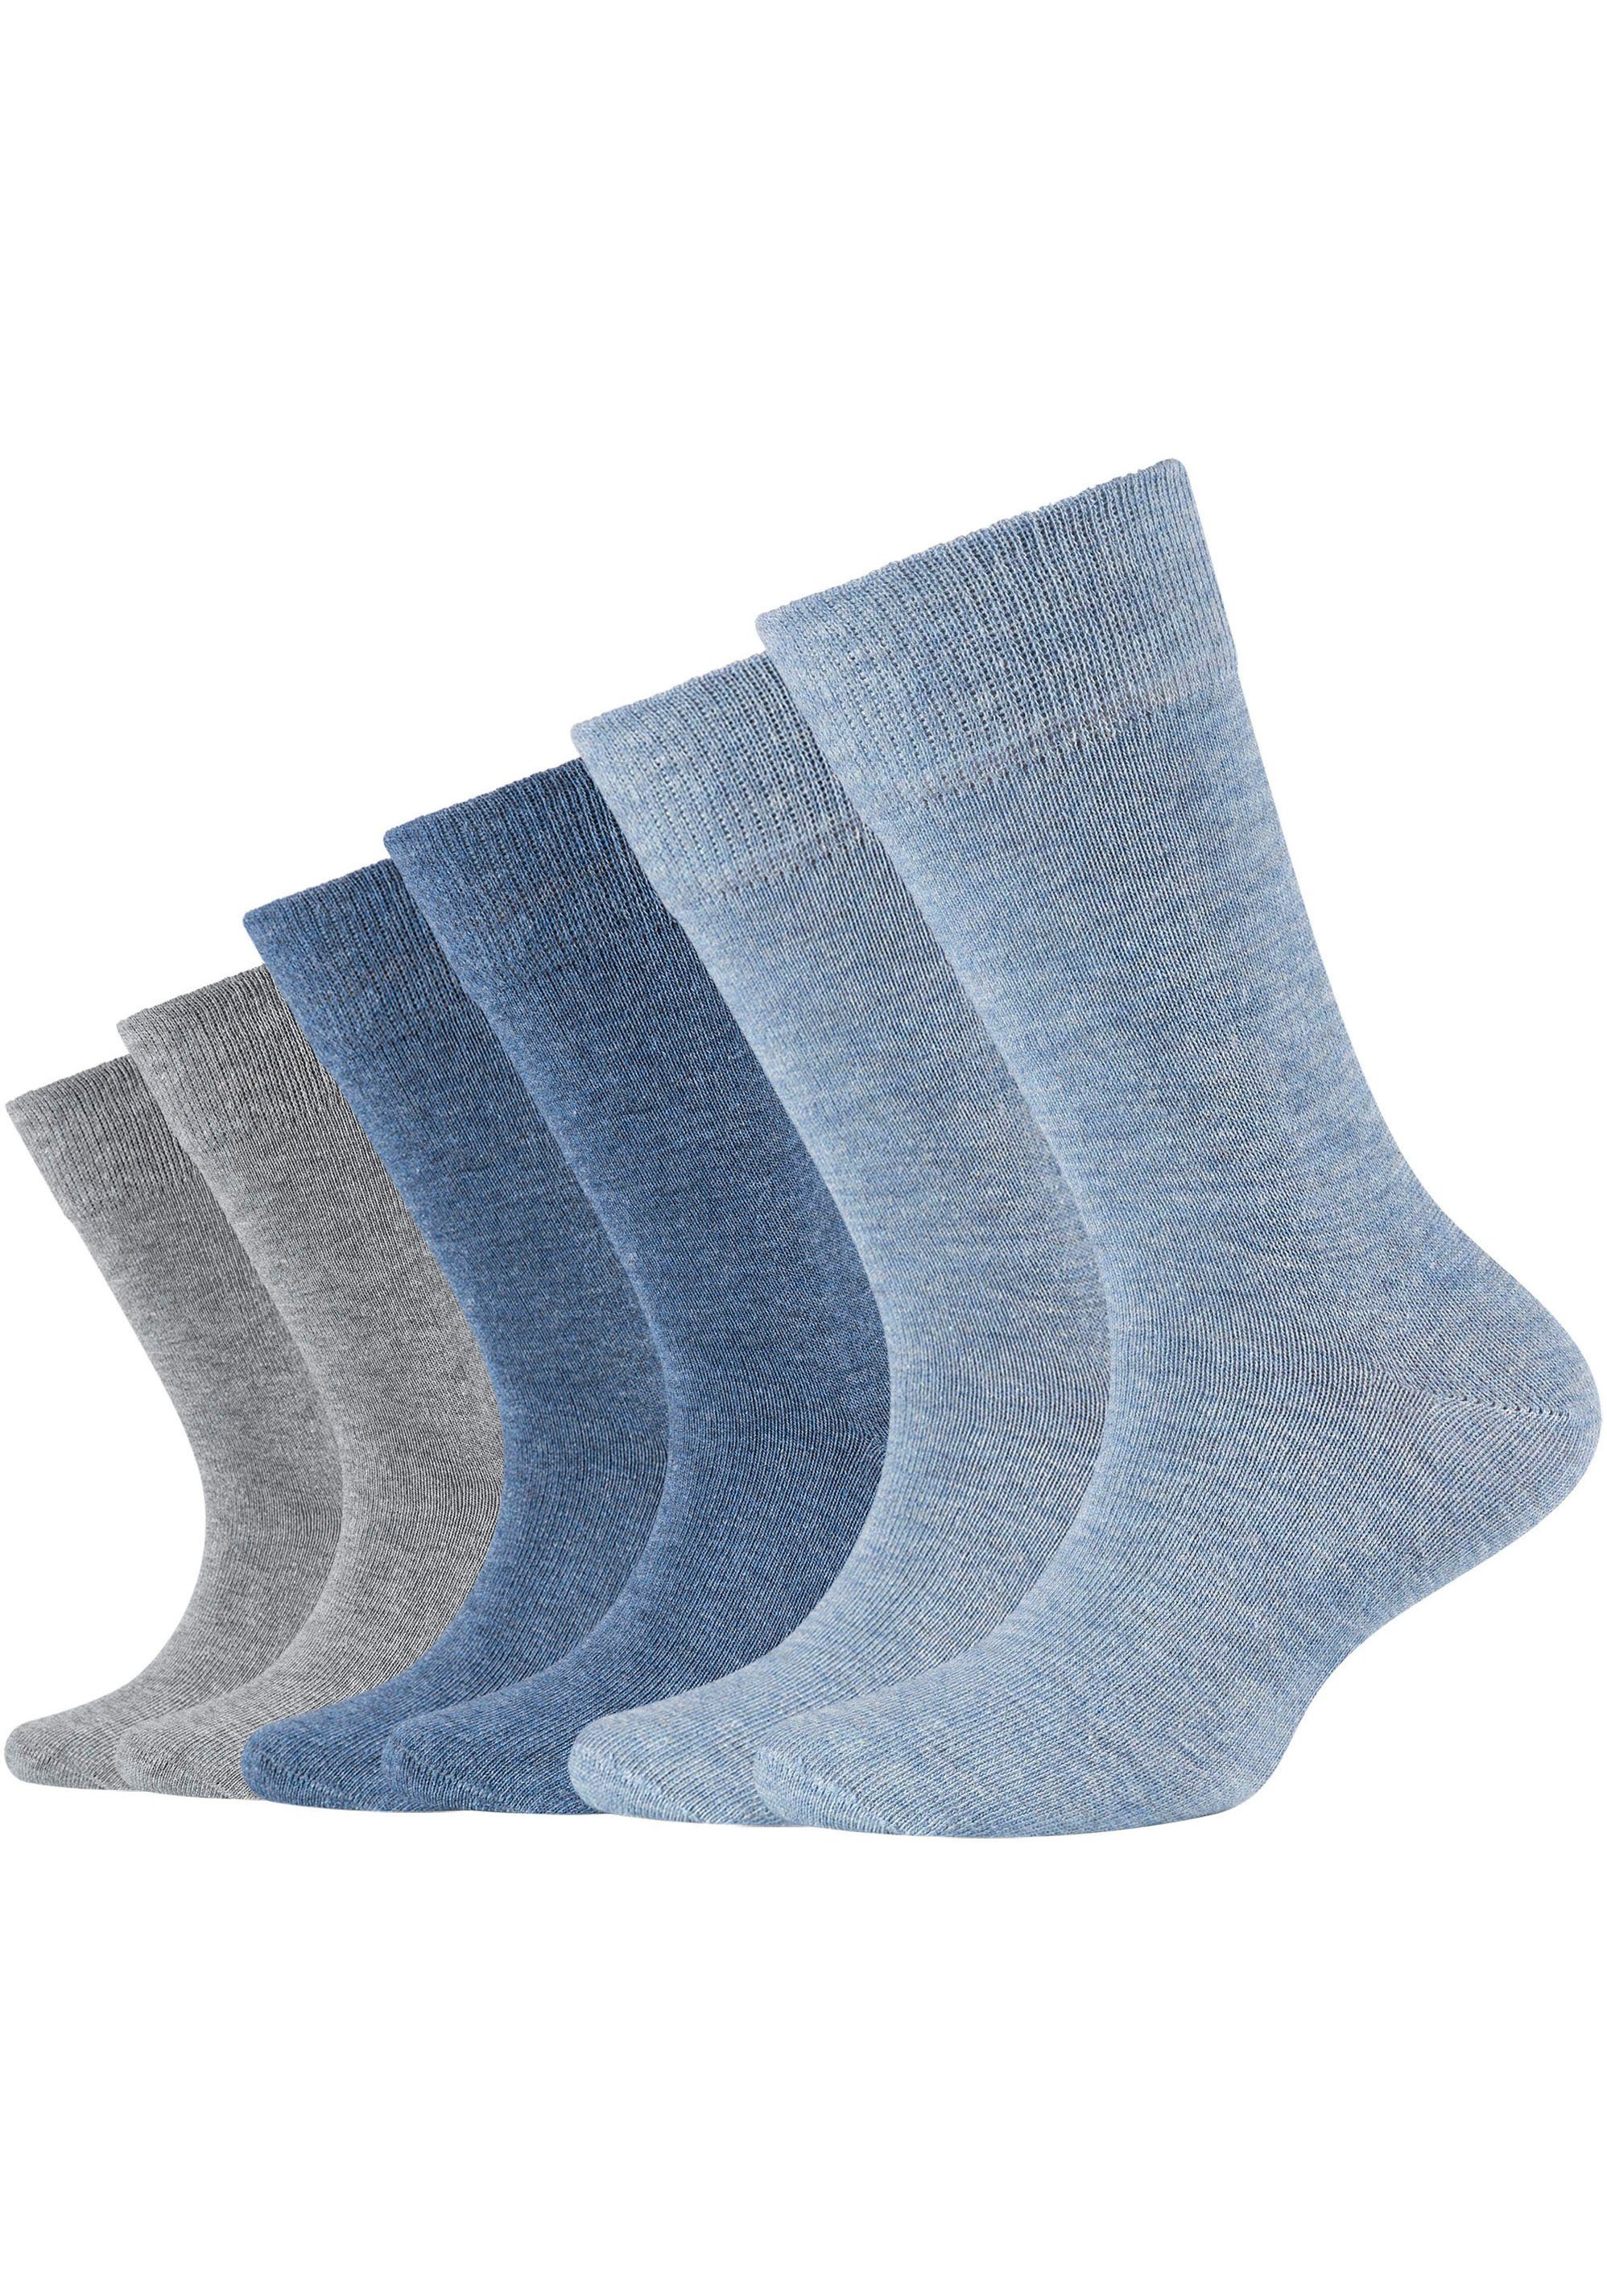 Camano Socken (Packung, 6-Paar) Hoher Anteil an gekämmter Baumwolle jeans-mix meliert